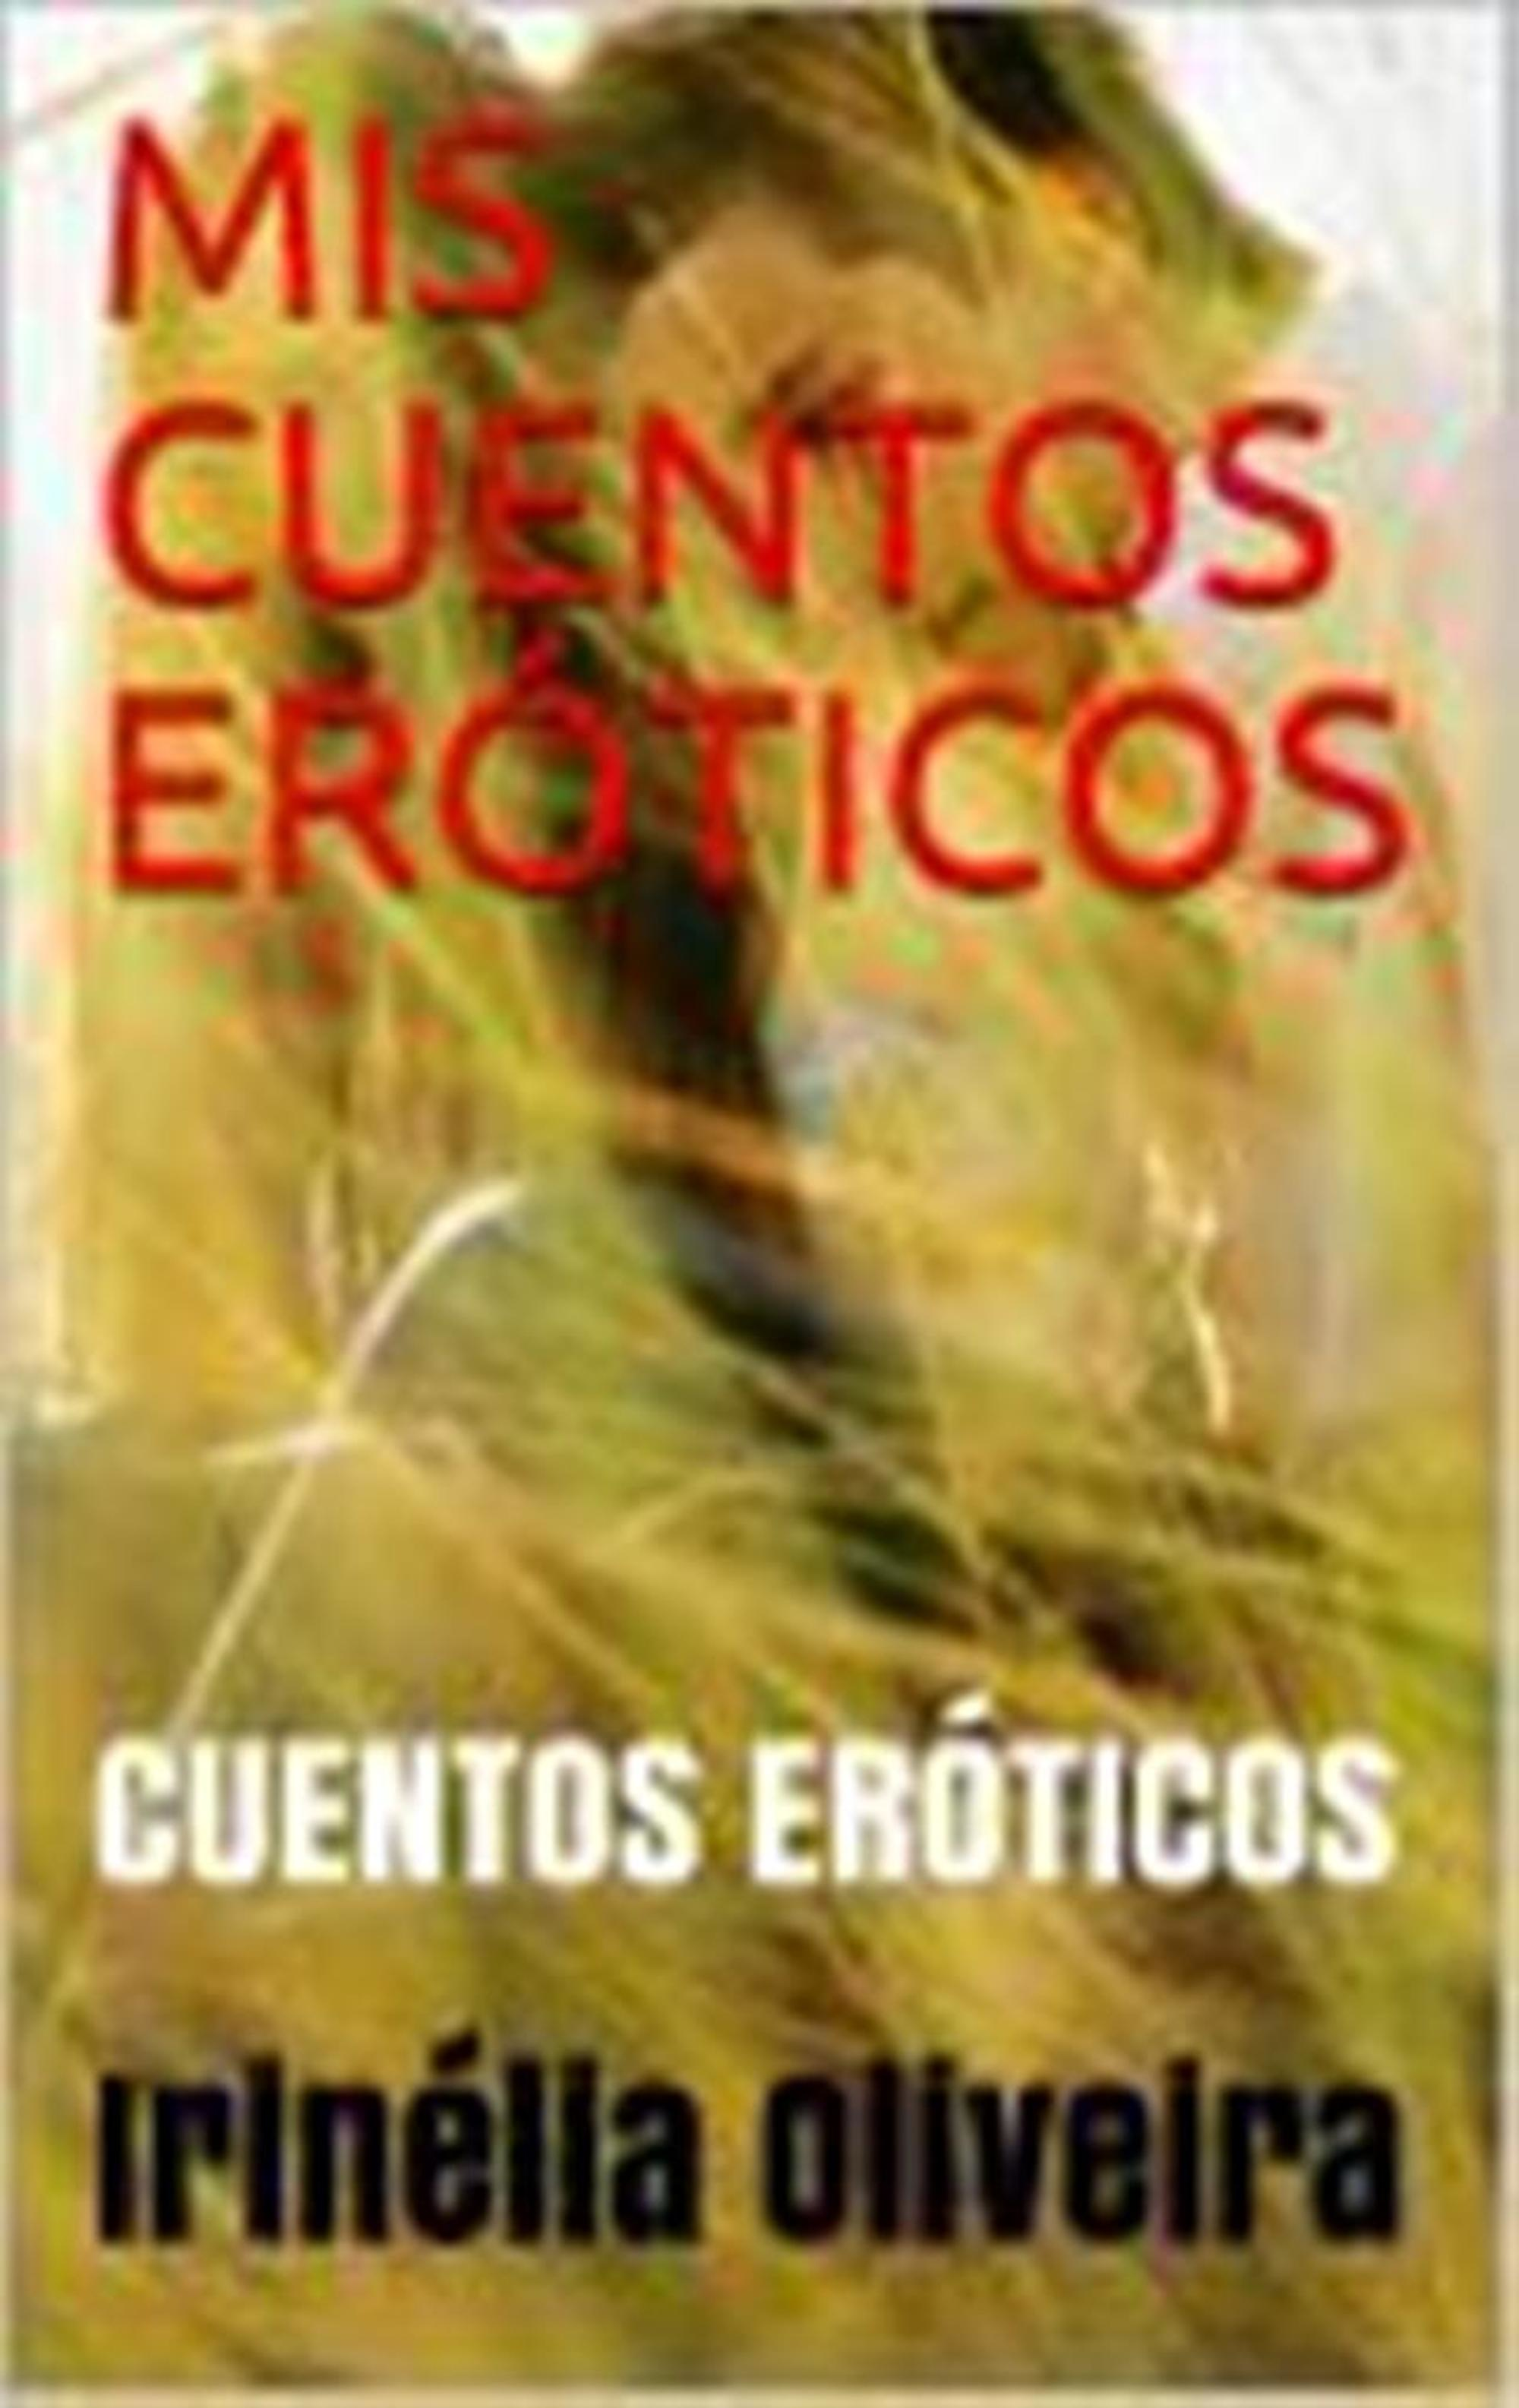 Ebook MIS CUENTOS ERÓTICOS - CUENTOS ERÓTICOS!, 600E by Irinélia Oliveira -  7Switch